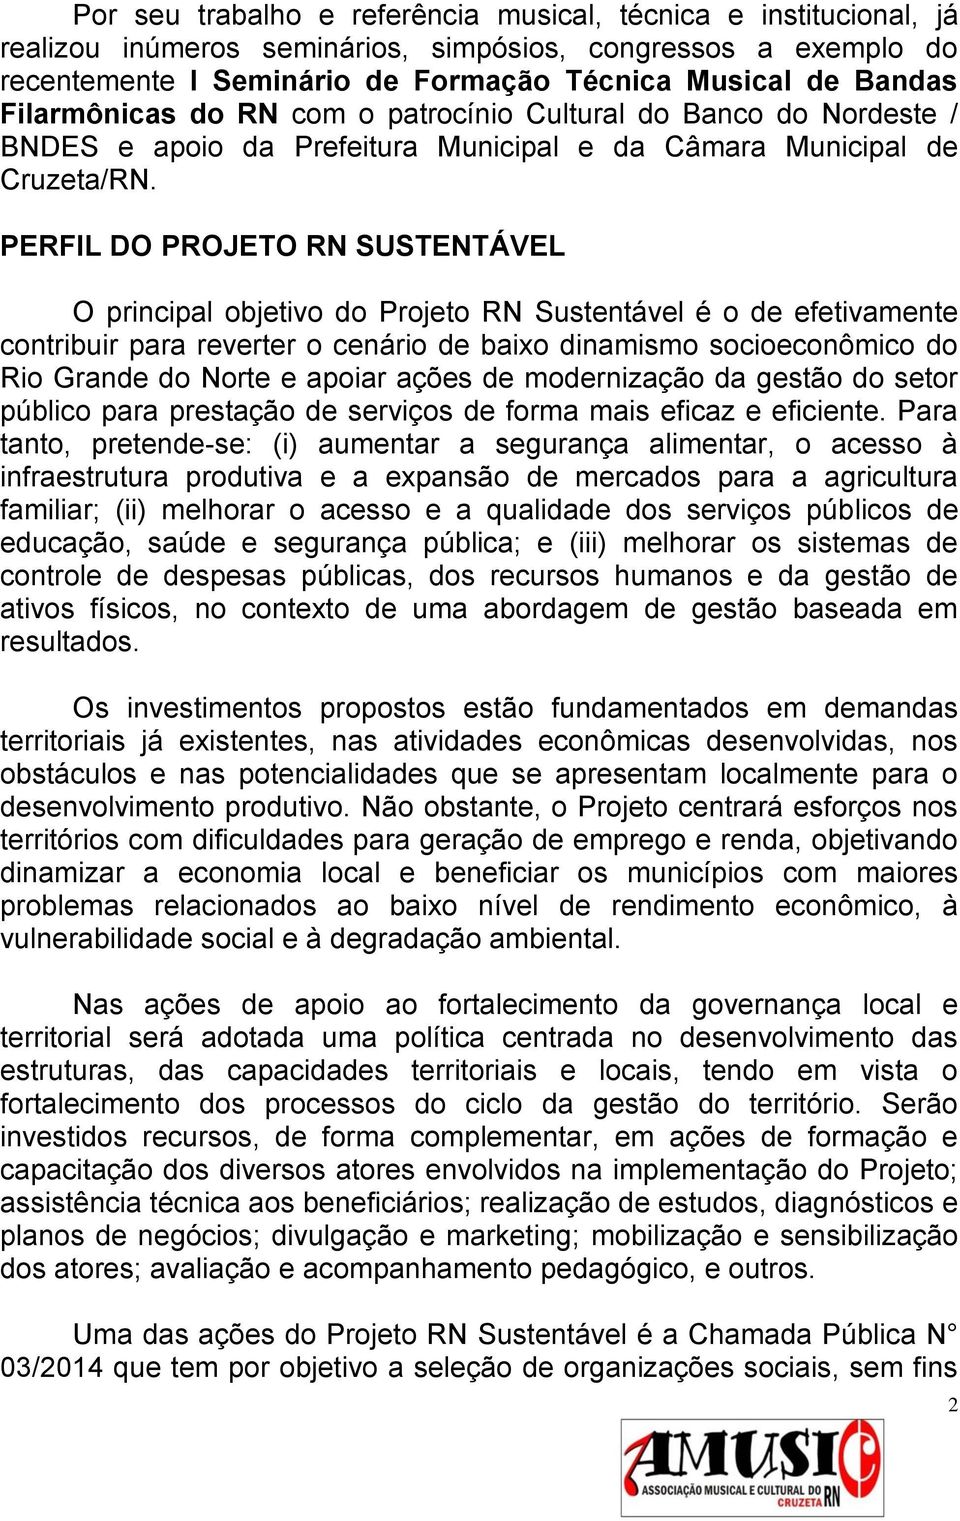 PERFIL DO PROJETO RN SUSTENTÁVEL O principal objetivo do Projeto RN Sustentável é o de efetivamente contribuir para reverter o cenário de baixo dinamismo socioeconômico do Rio Grande do Norte e